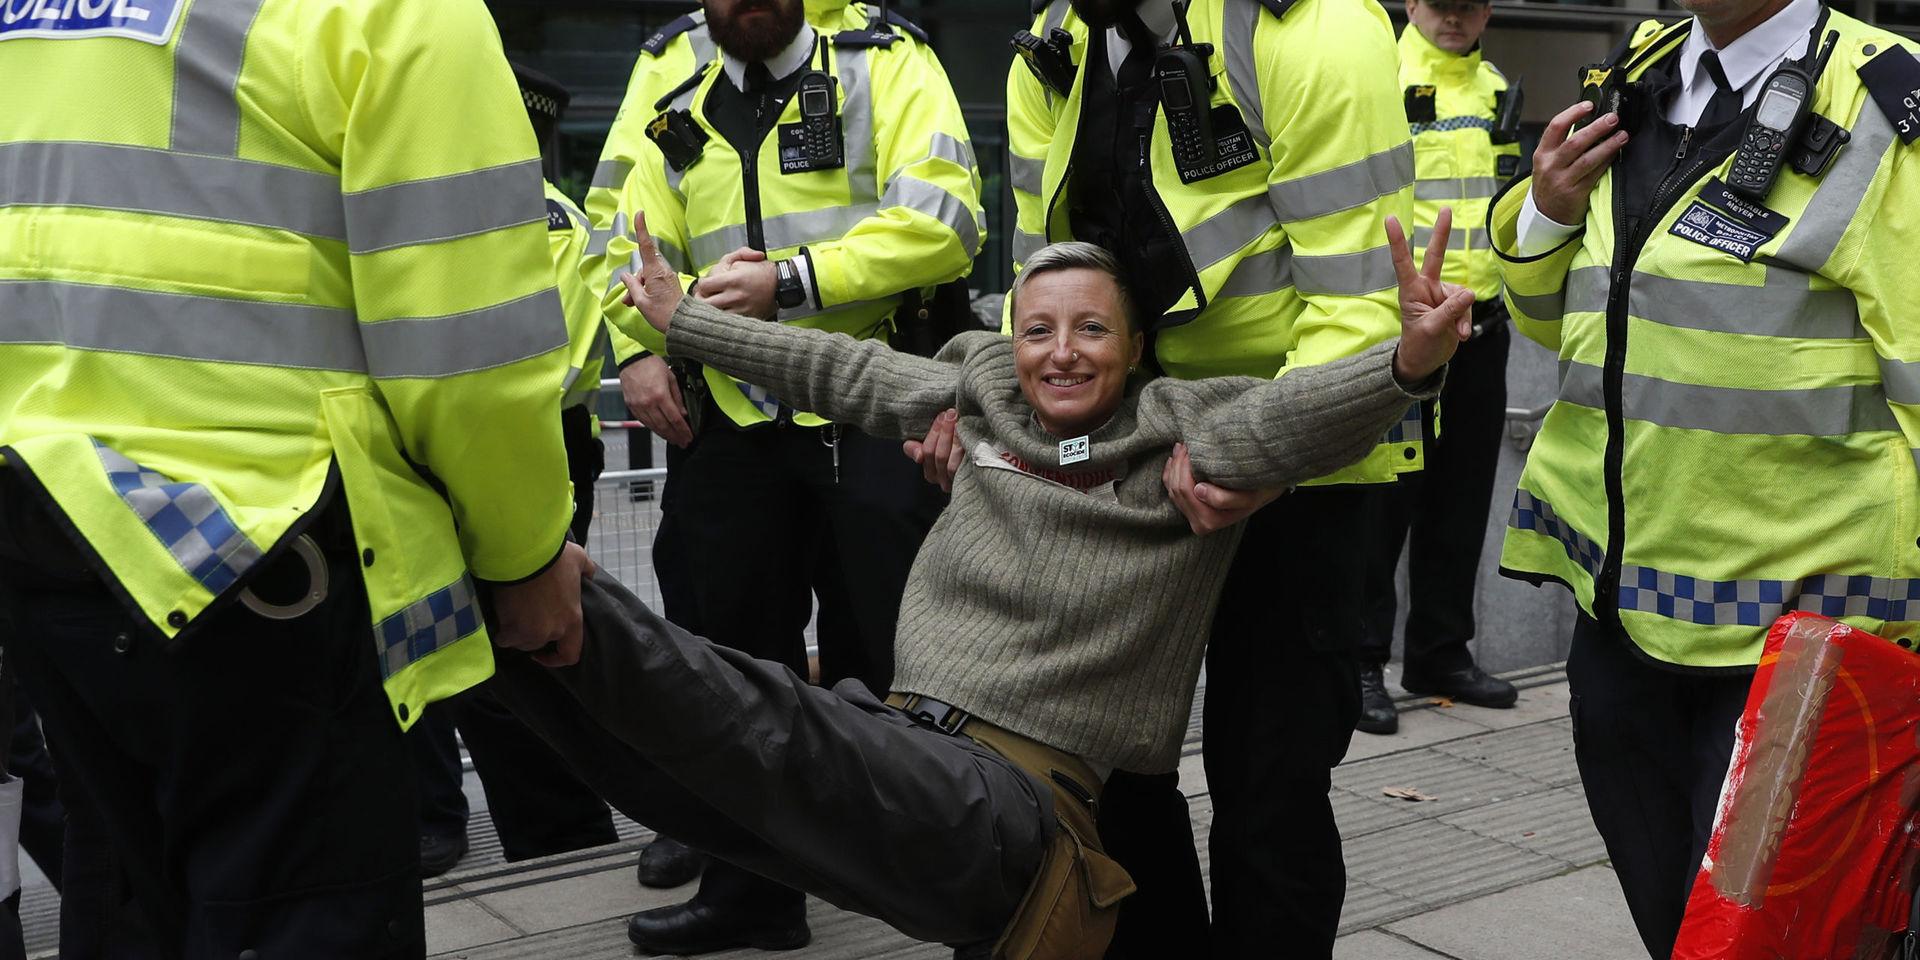 En klimataktivist grips och bärs bort av polis i London. Aktivisterna från nätverket Extinction Rebellion använder fredlig civil olydnad och ockuperar bland annat gator och broar för att få makthavare att agera mot massutrotningen av djur och natur. Bilden är från den 8 oktober.